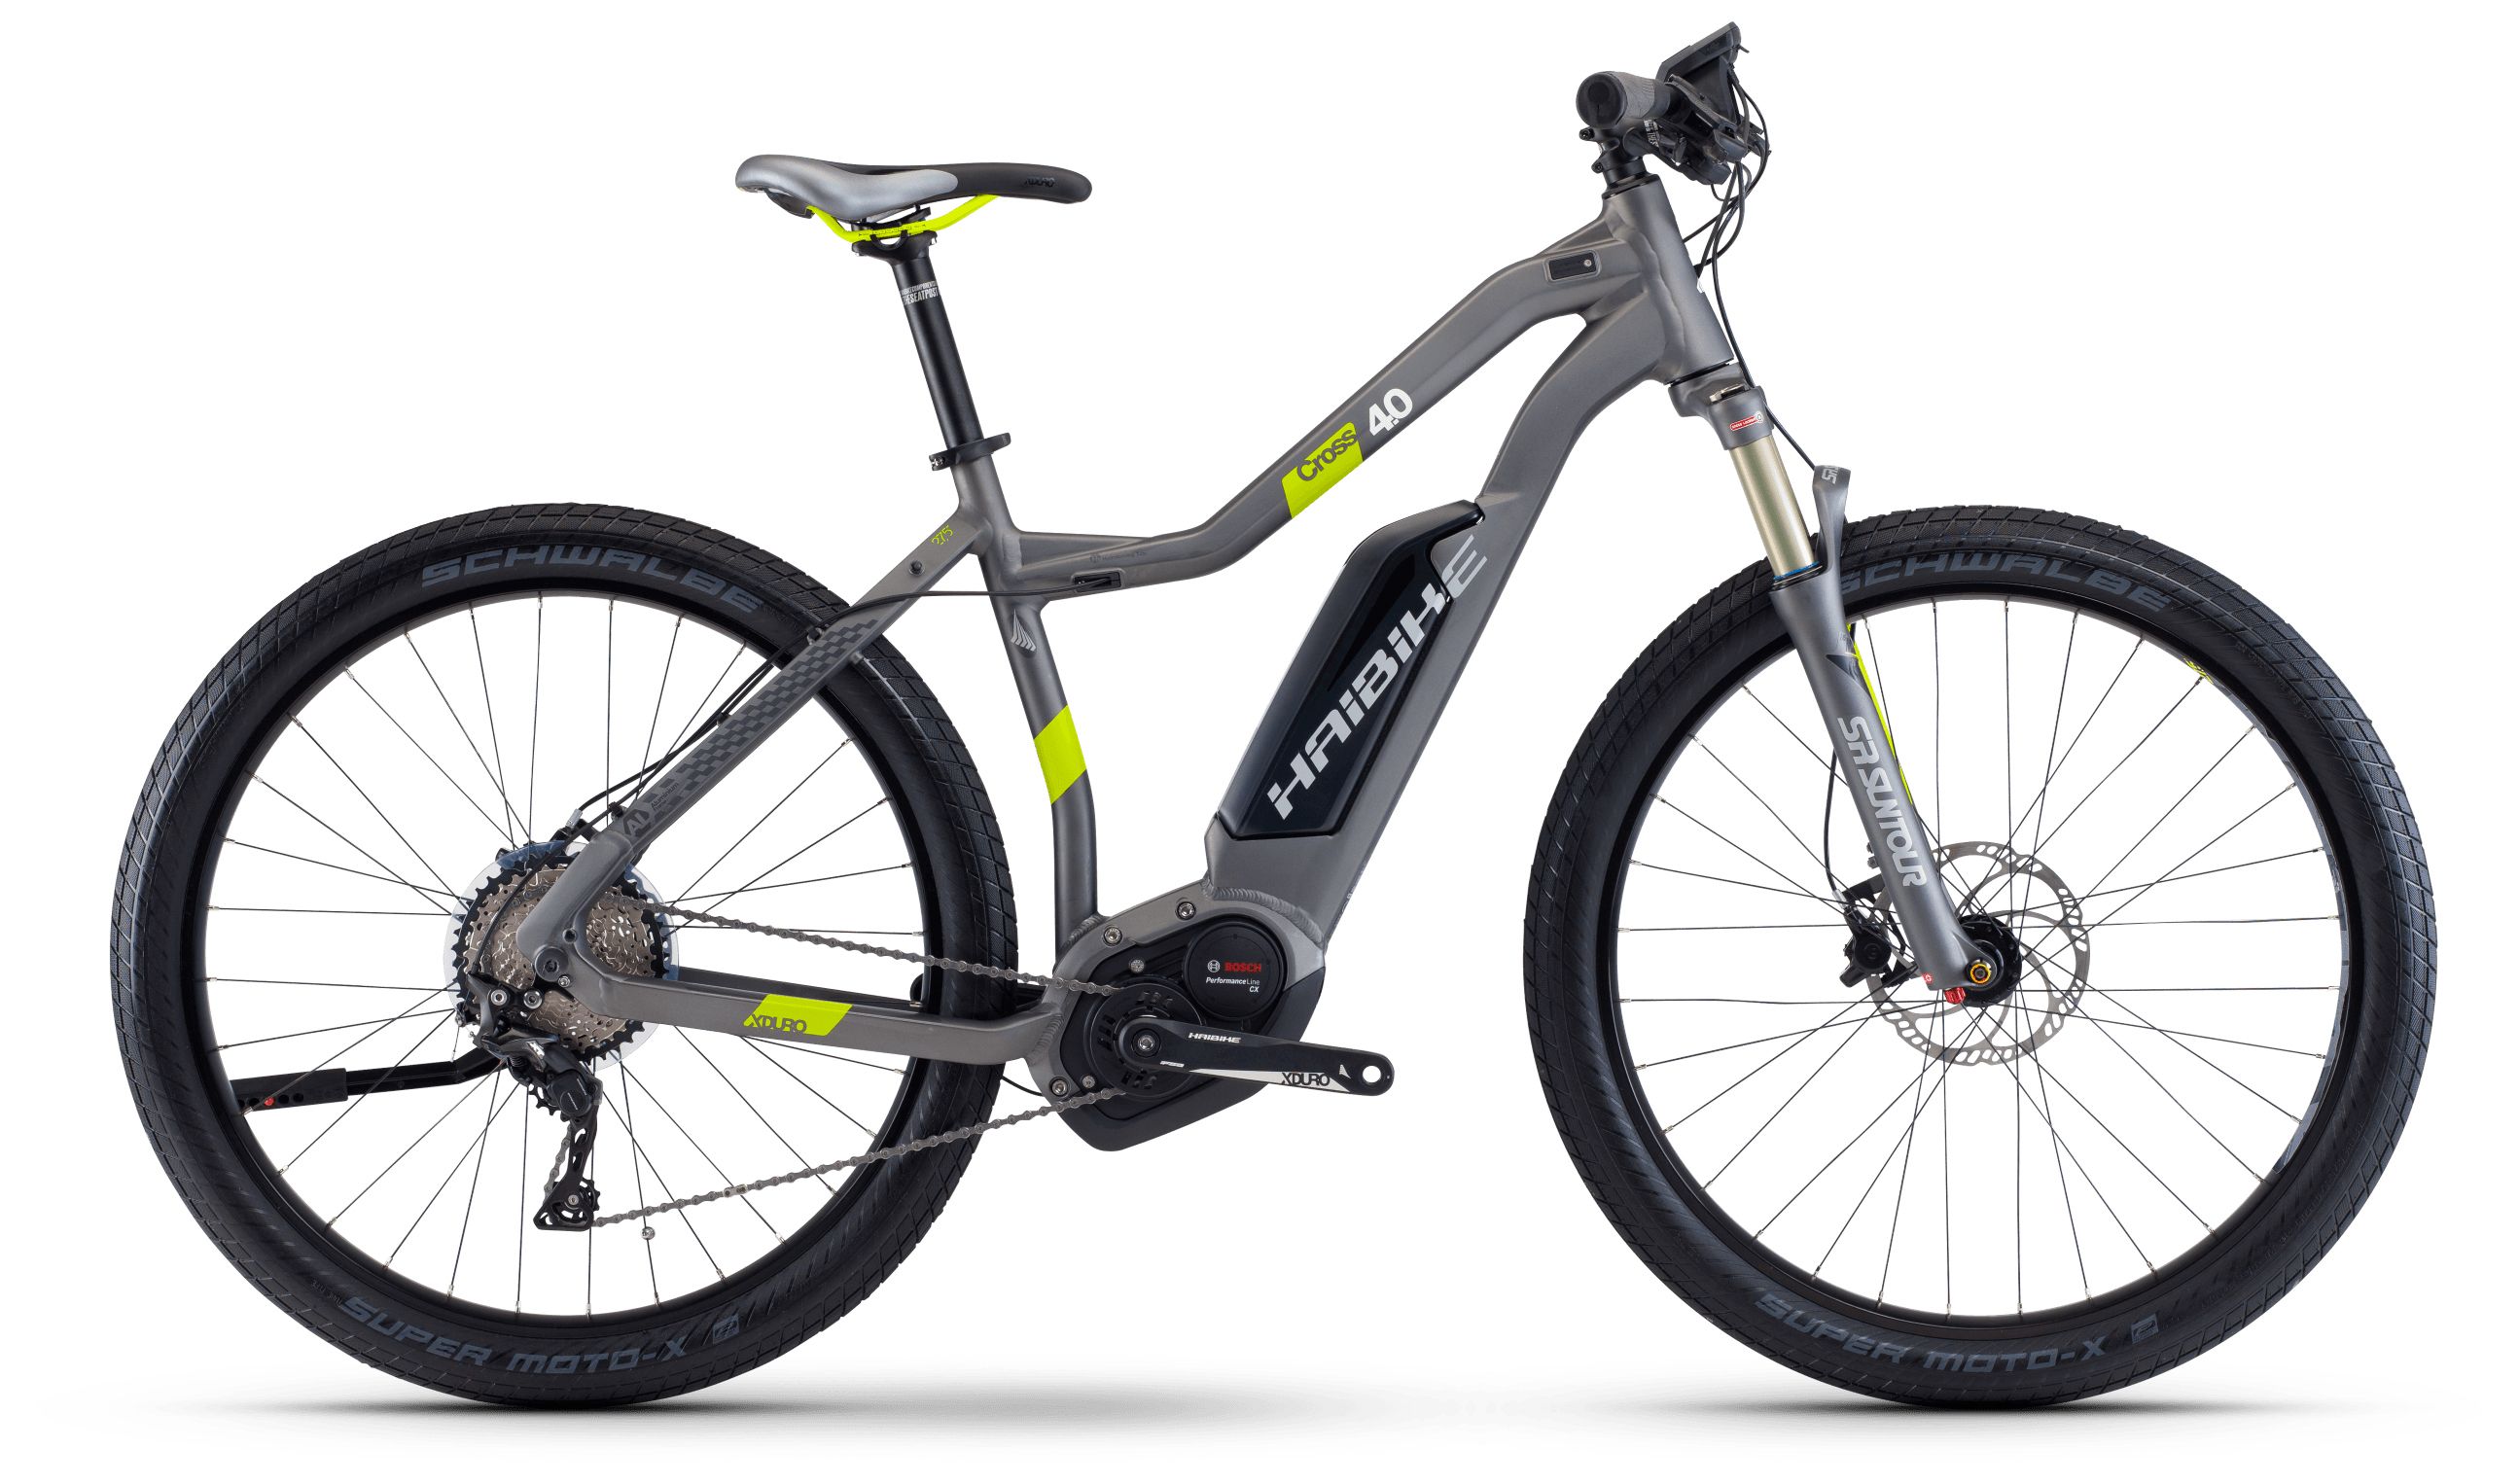  Отзывы о Горном велосипеде Haibike Xduro Cross 4.0 low-step 500Wh 2017